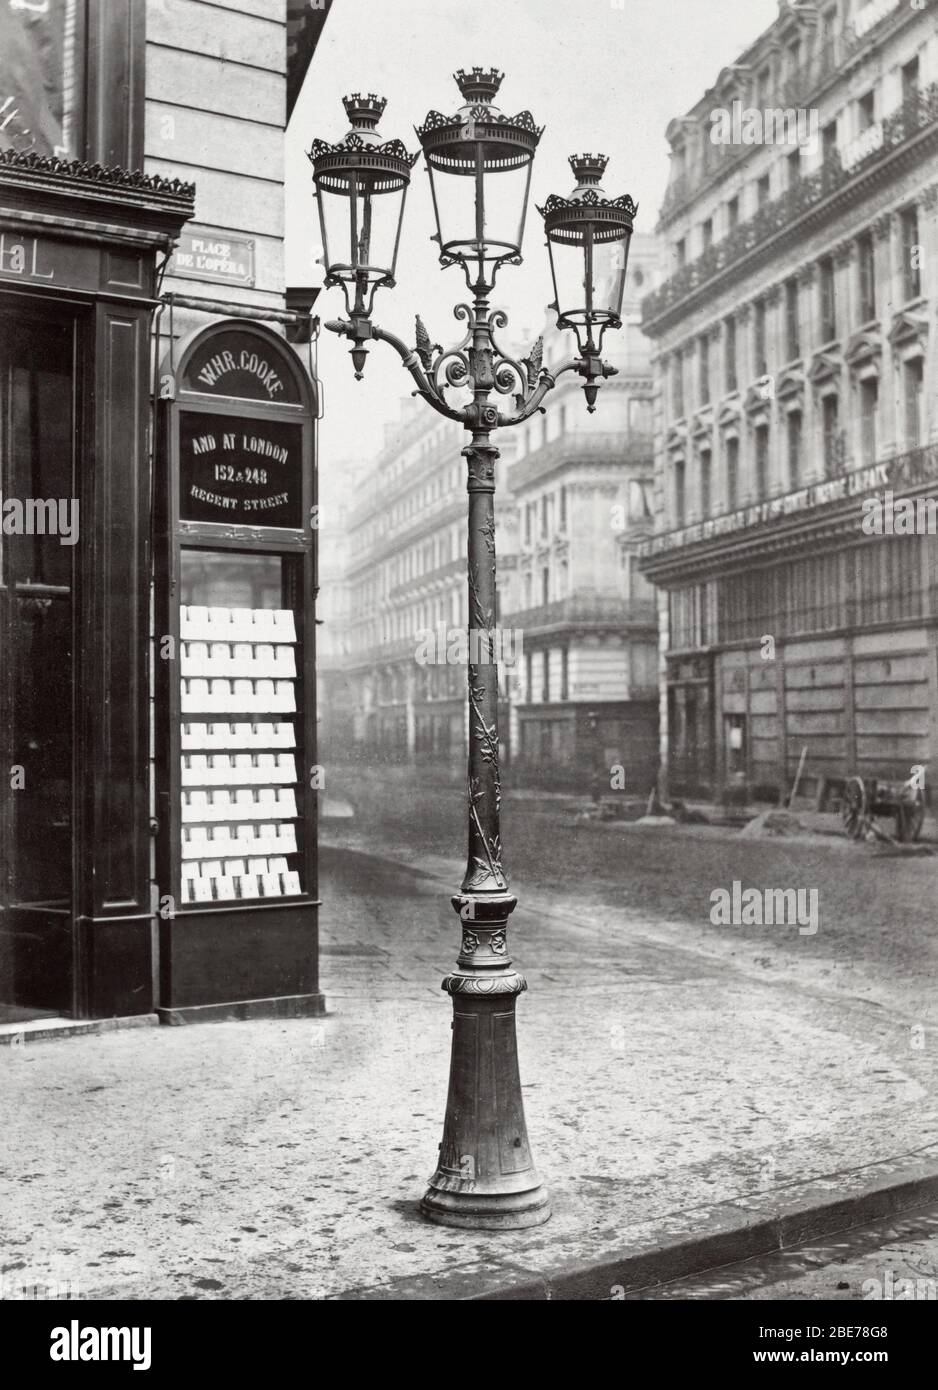 Place de l'Opéra. no 4- Lampara de estilo Oudry con tres lamparas en una esquina de la calle. Edificio inmediatamente detrás de la lámpara de pie tiene una placa de lectura: WHR Cooke / y en Londres. 1878 Foto de stock